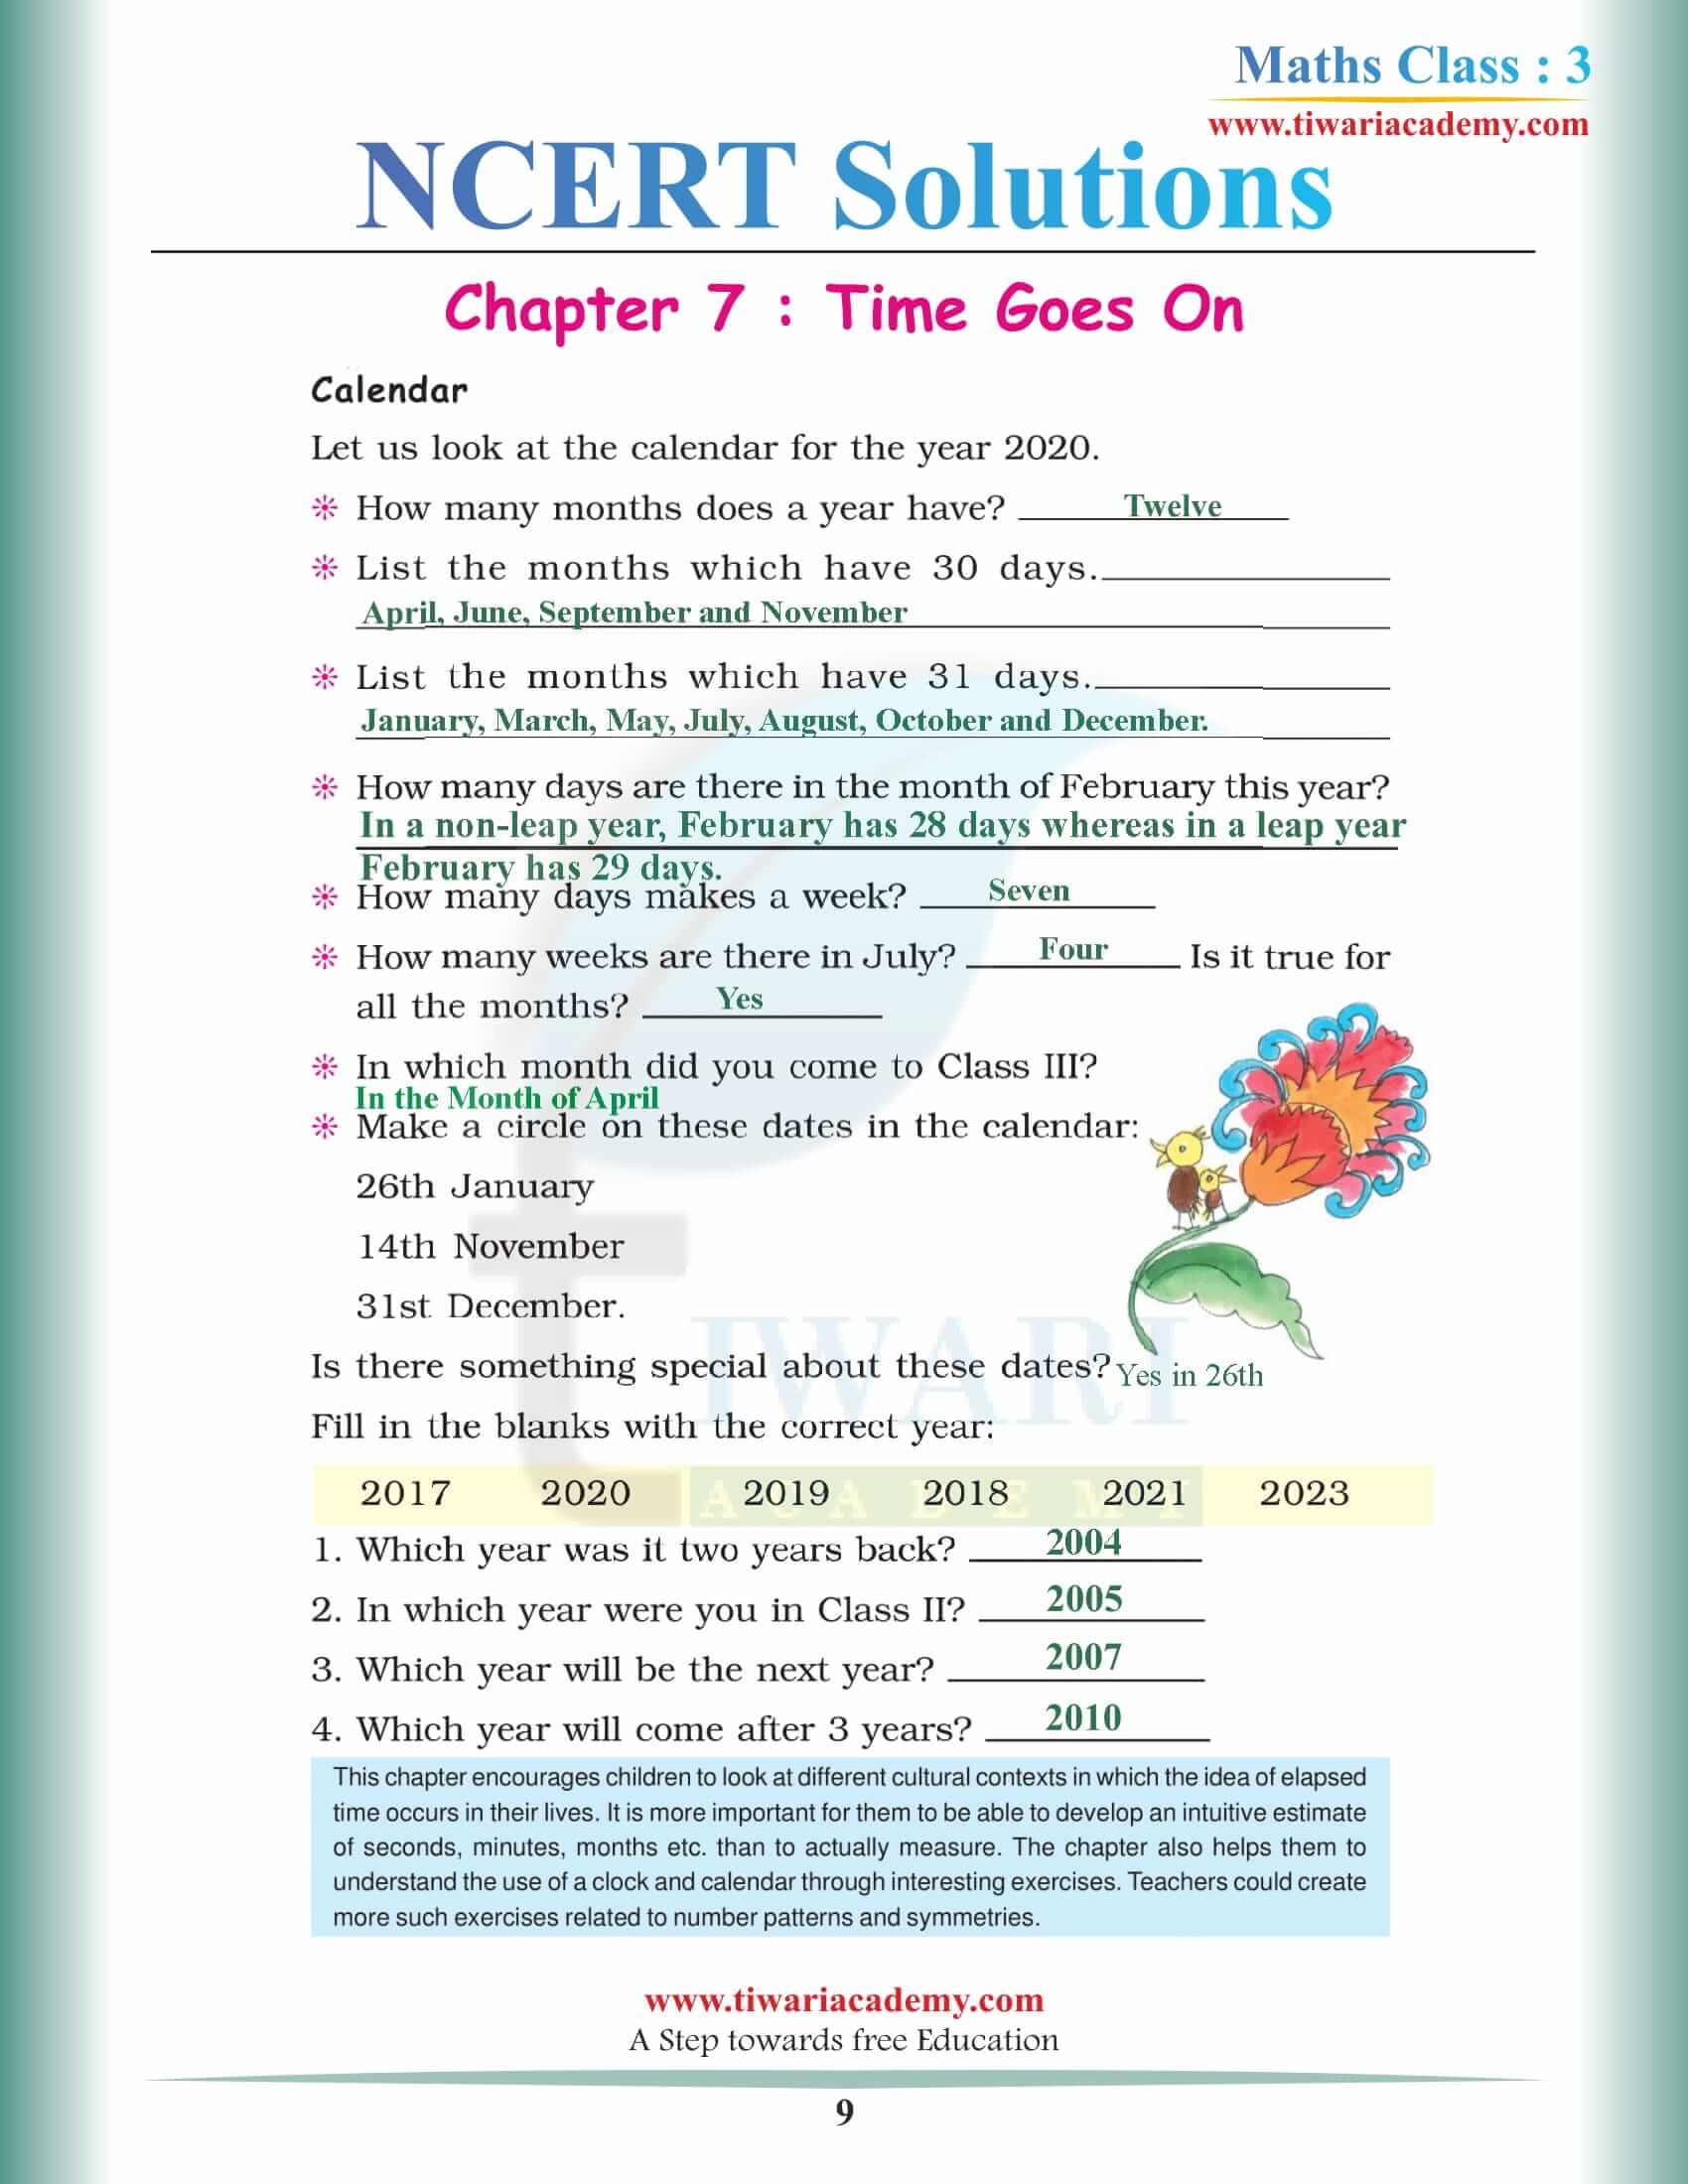 Class 3 Maths NCERT Chapter 7 Solutions